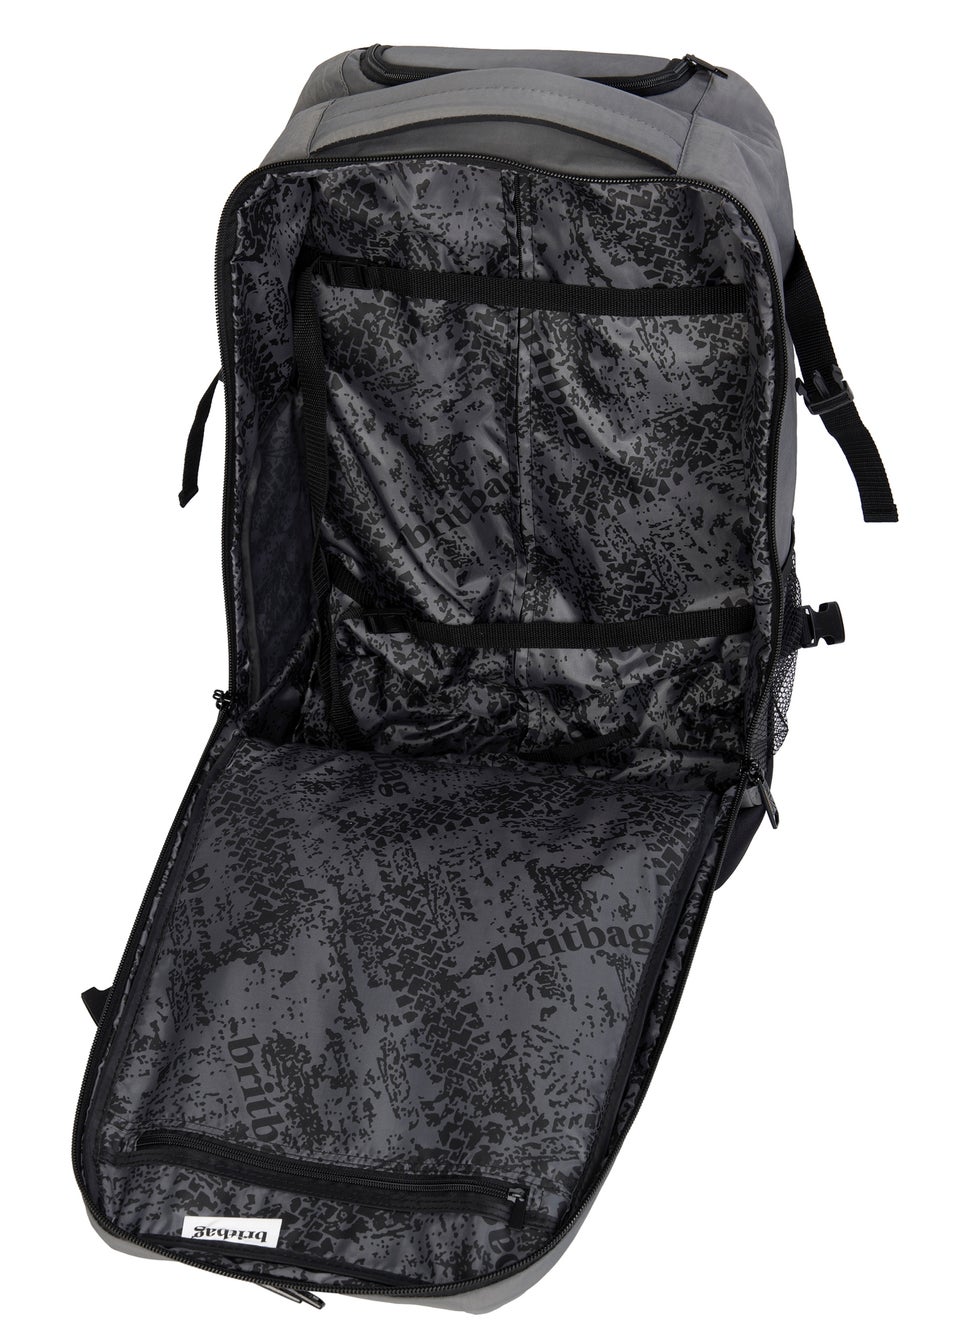 BritBag Nauru Charcoal Trolley Backpack